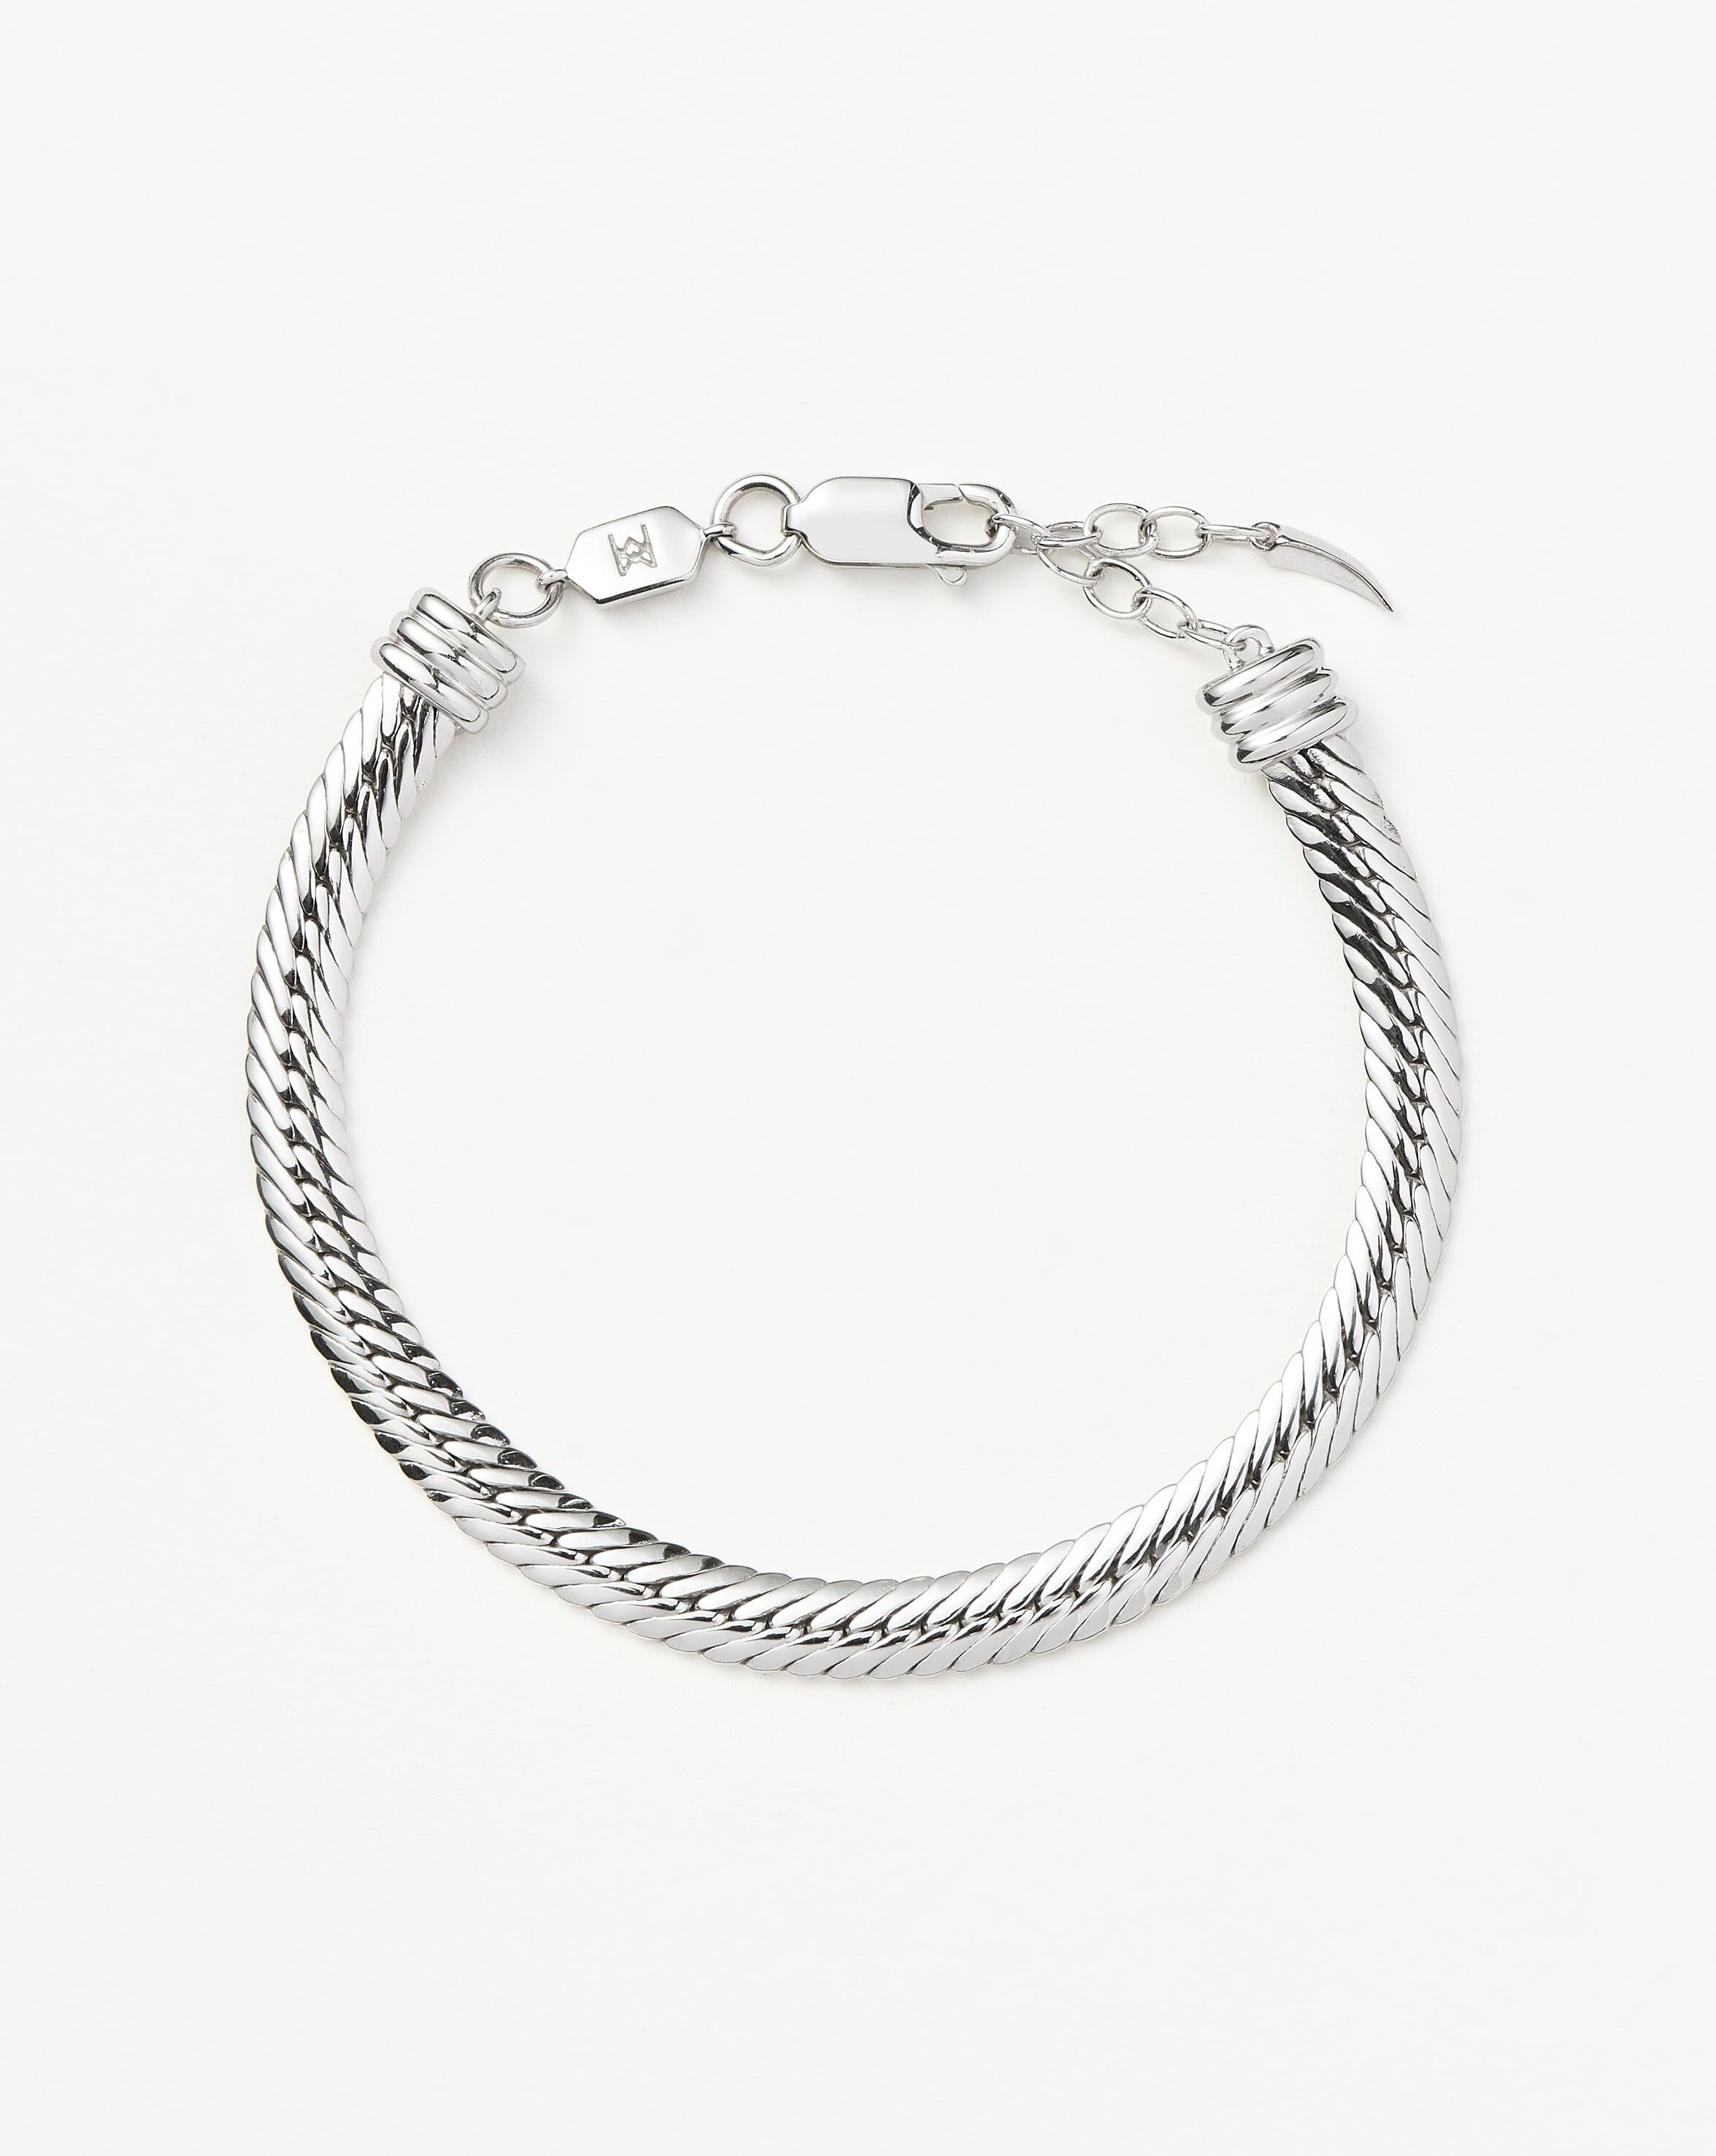 Pearl Pop Bracelet | Silver Bracelets | BRC791 – Silver by Mail